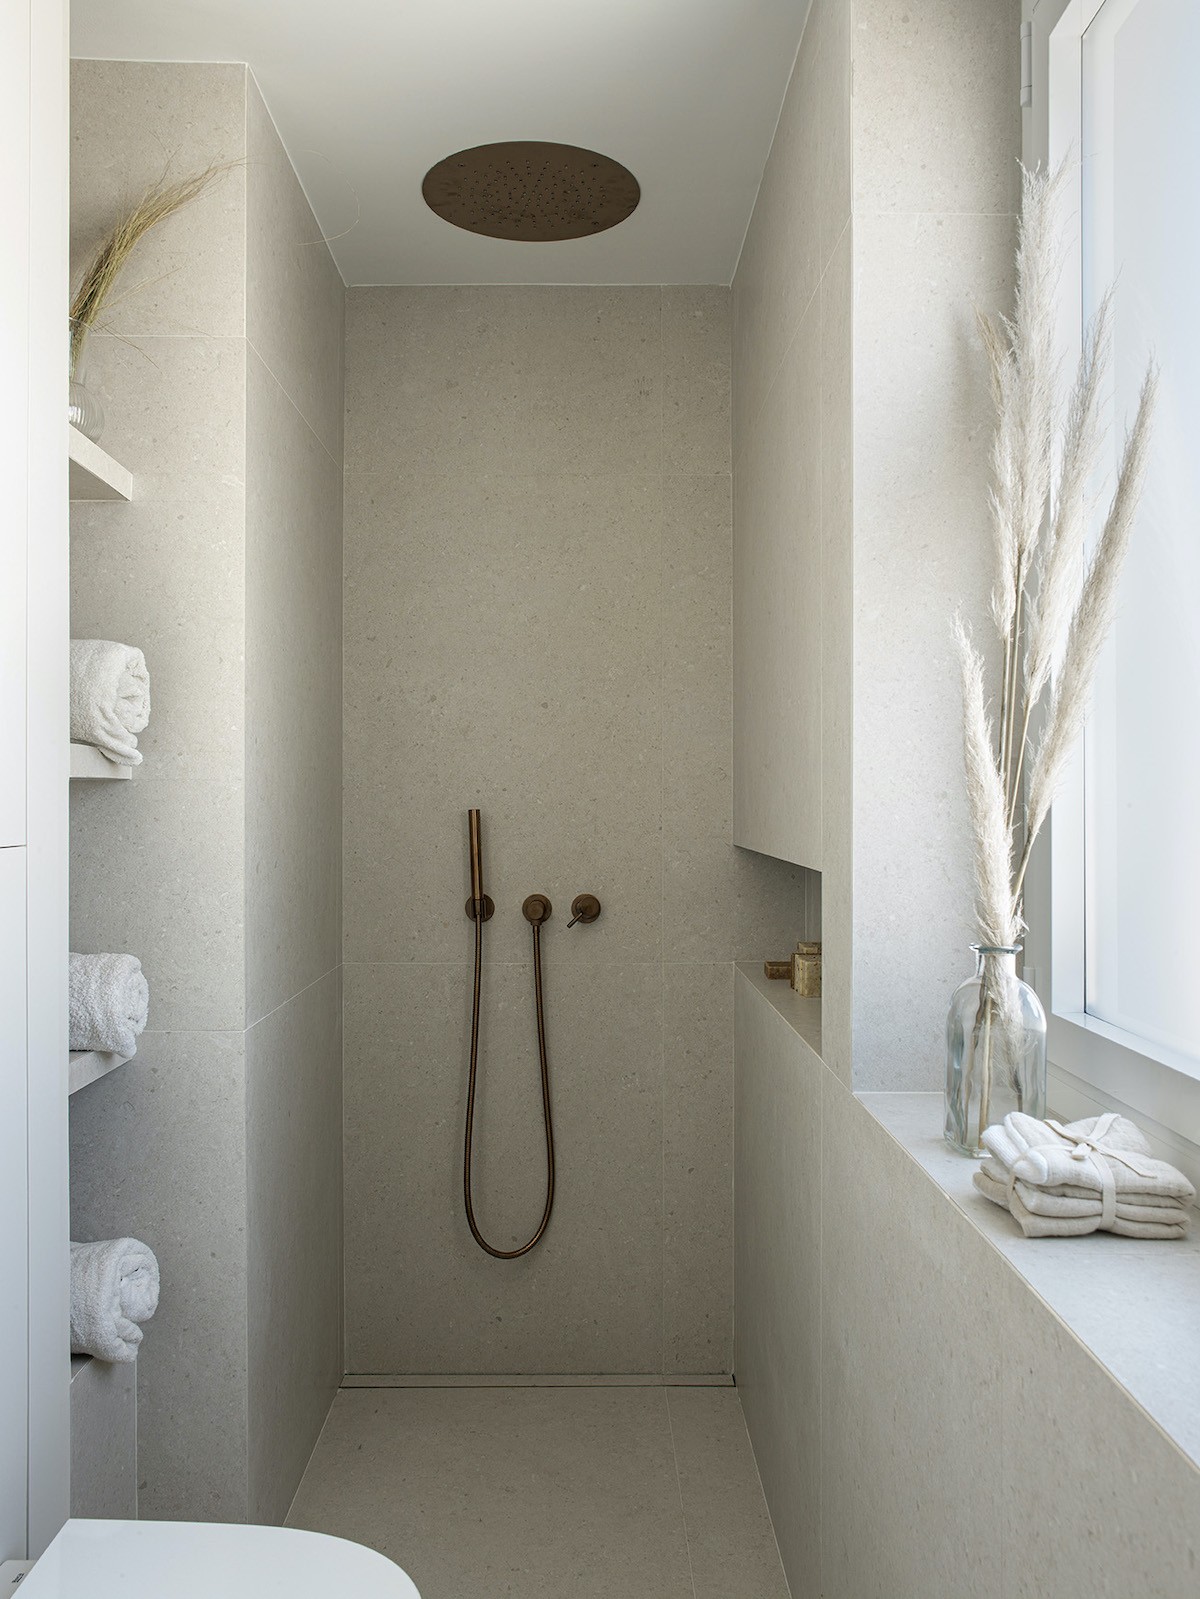 BANHEIRO | Os metais em cobre trazem um ar de sofisticação para o banheiro do morador (Foto: Divulgação / Montse Garriga Grau)